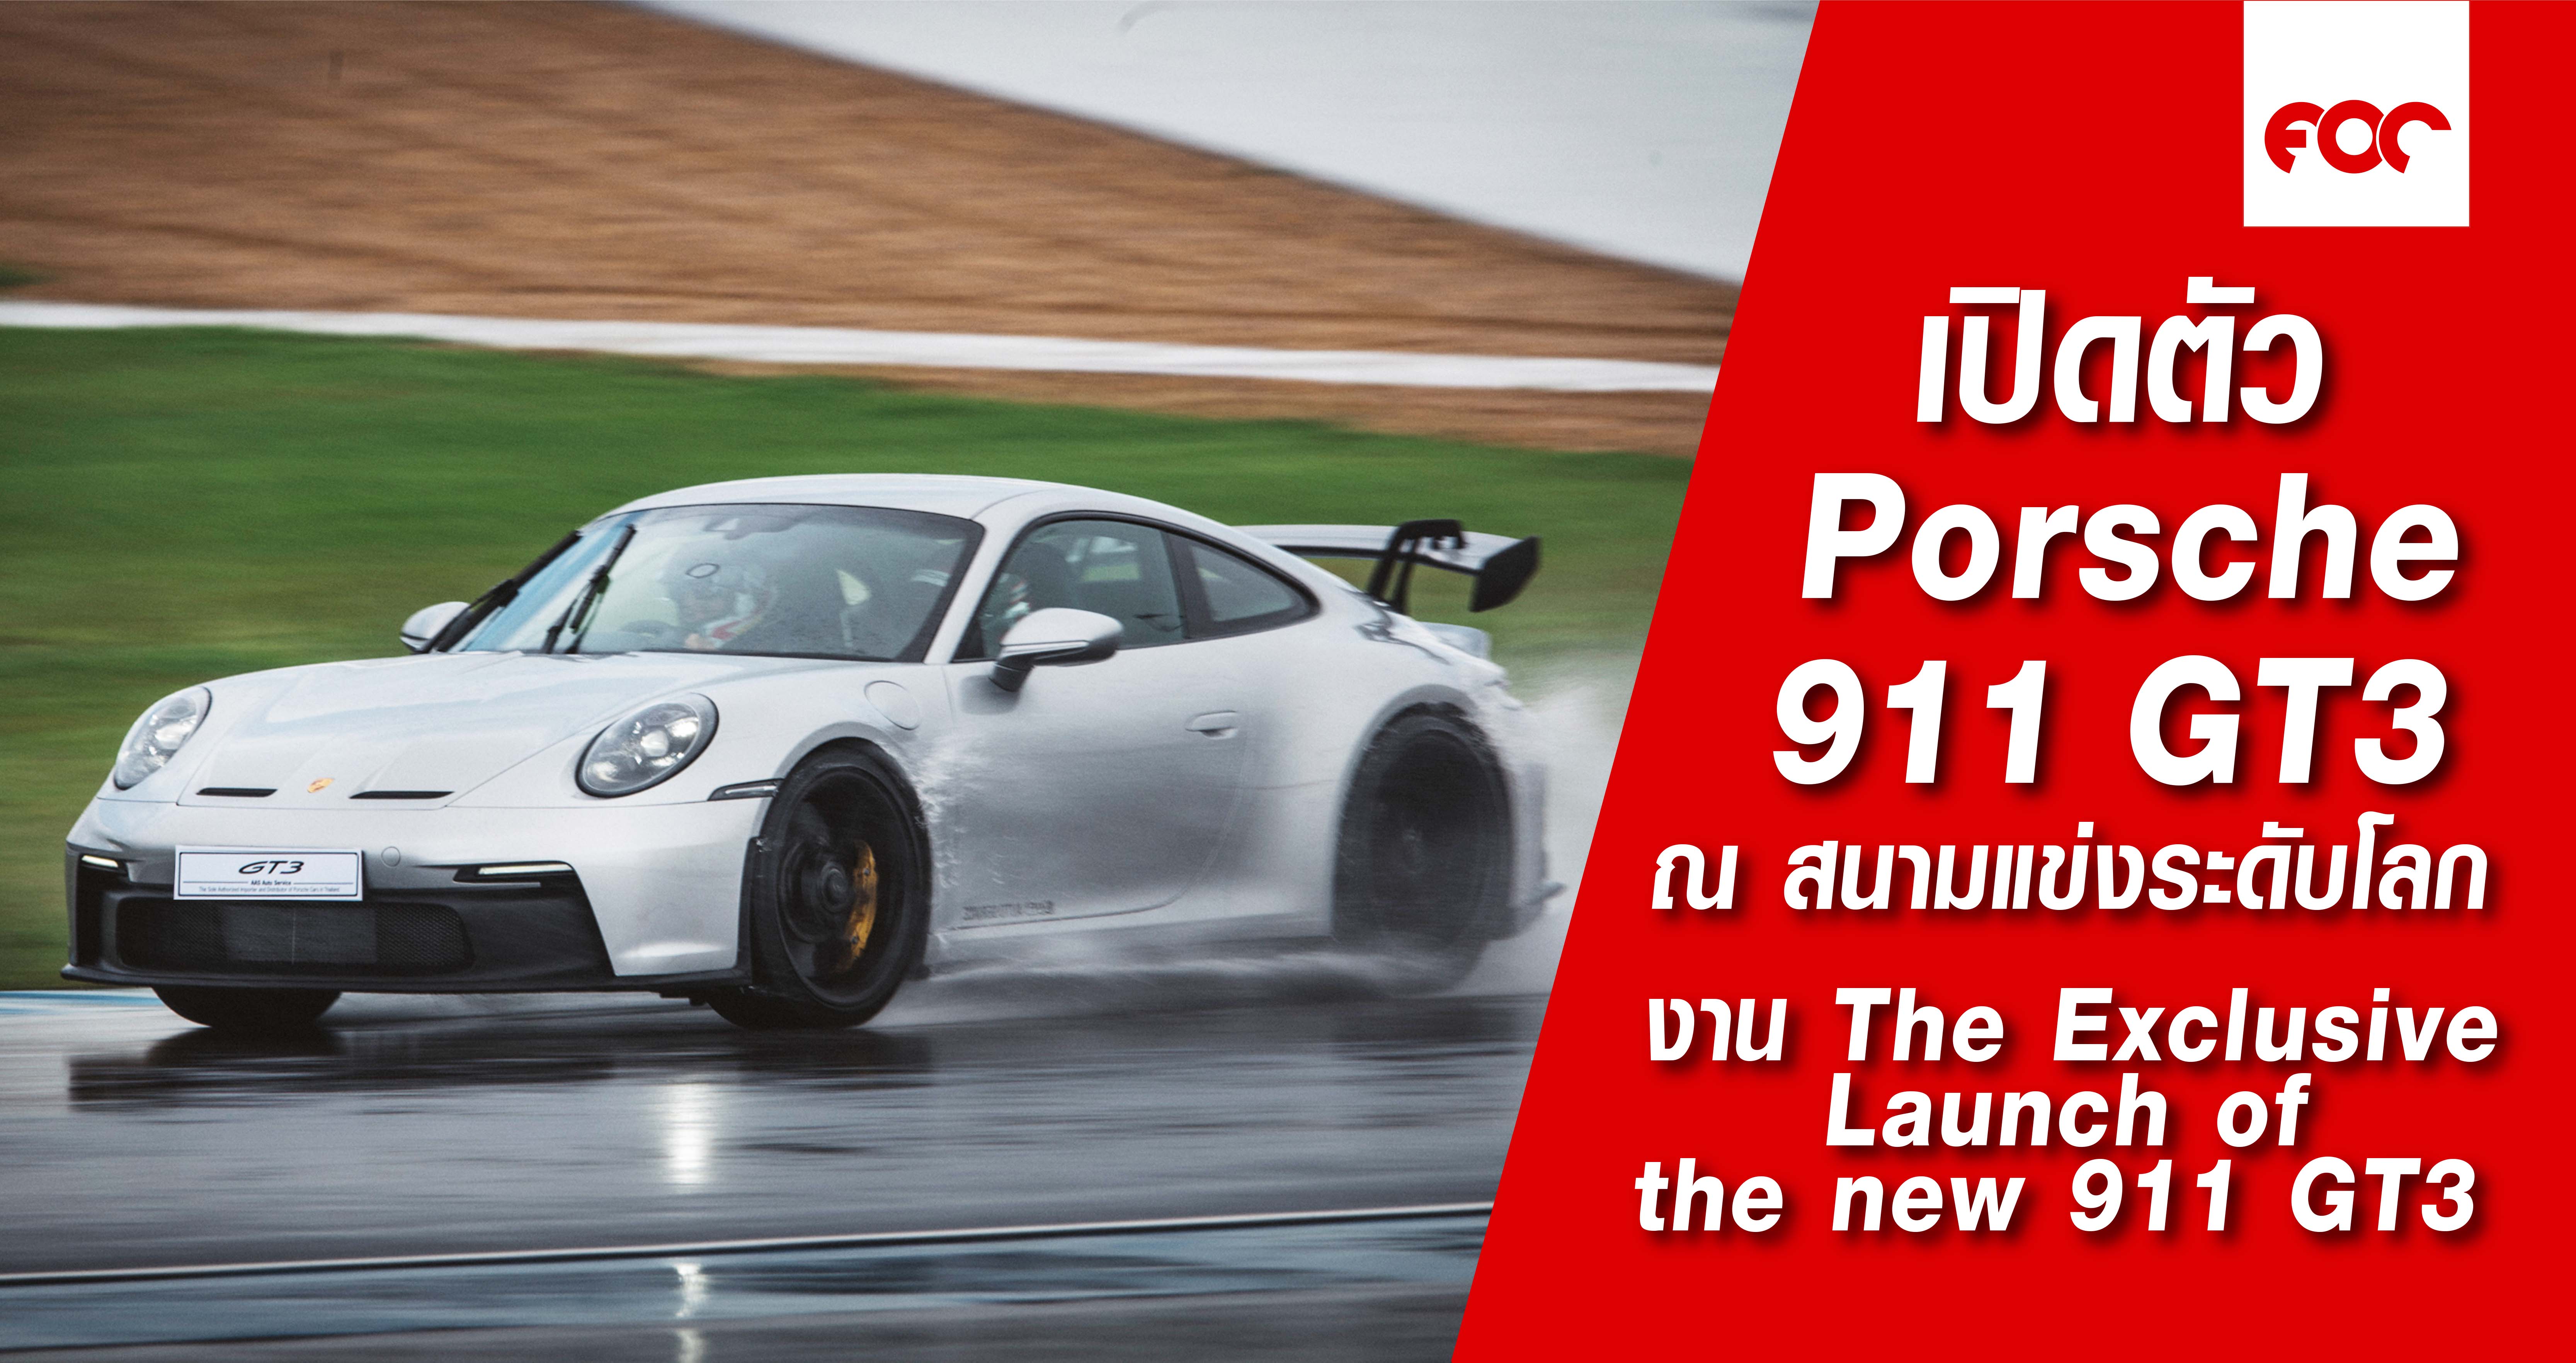 เปิดตัวปอร์เช่ 911 จีที3 ใหม่ ครั้งแรก ณ สนามแข่งระดับโลกในงาน The Exclusive Launch of the new 911 GT3